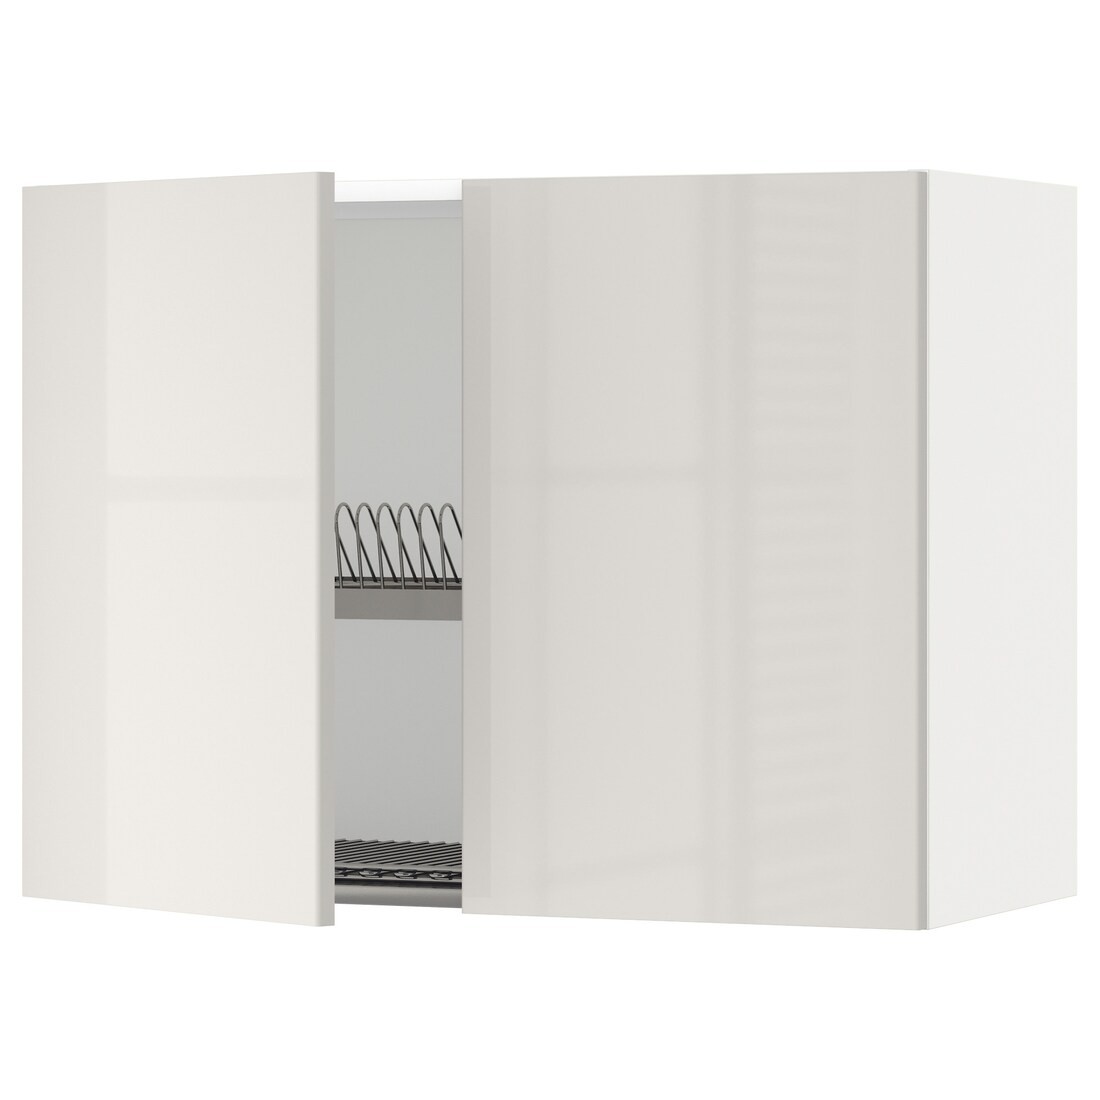 METOD МЕТОД Навесной шкаф с посудной сушилкой / 2 дверцы, белый / Ringhult светло-серый, 80x60 см